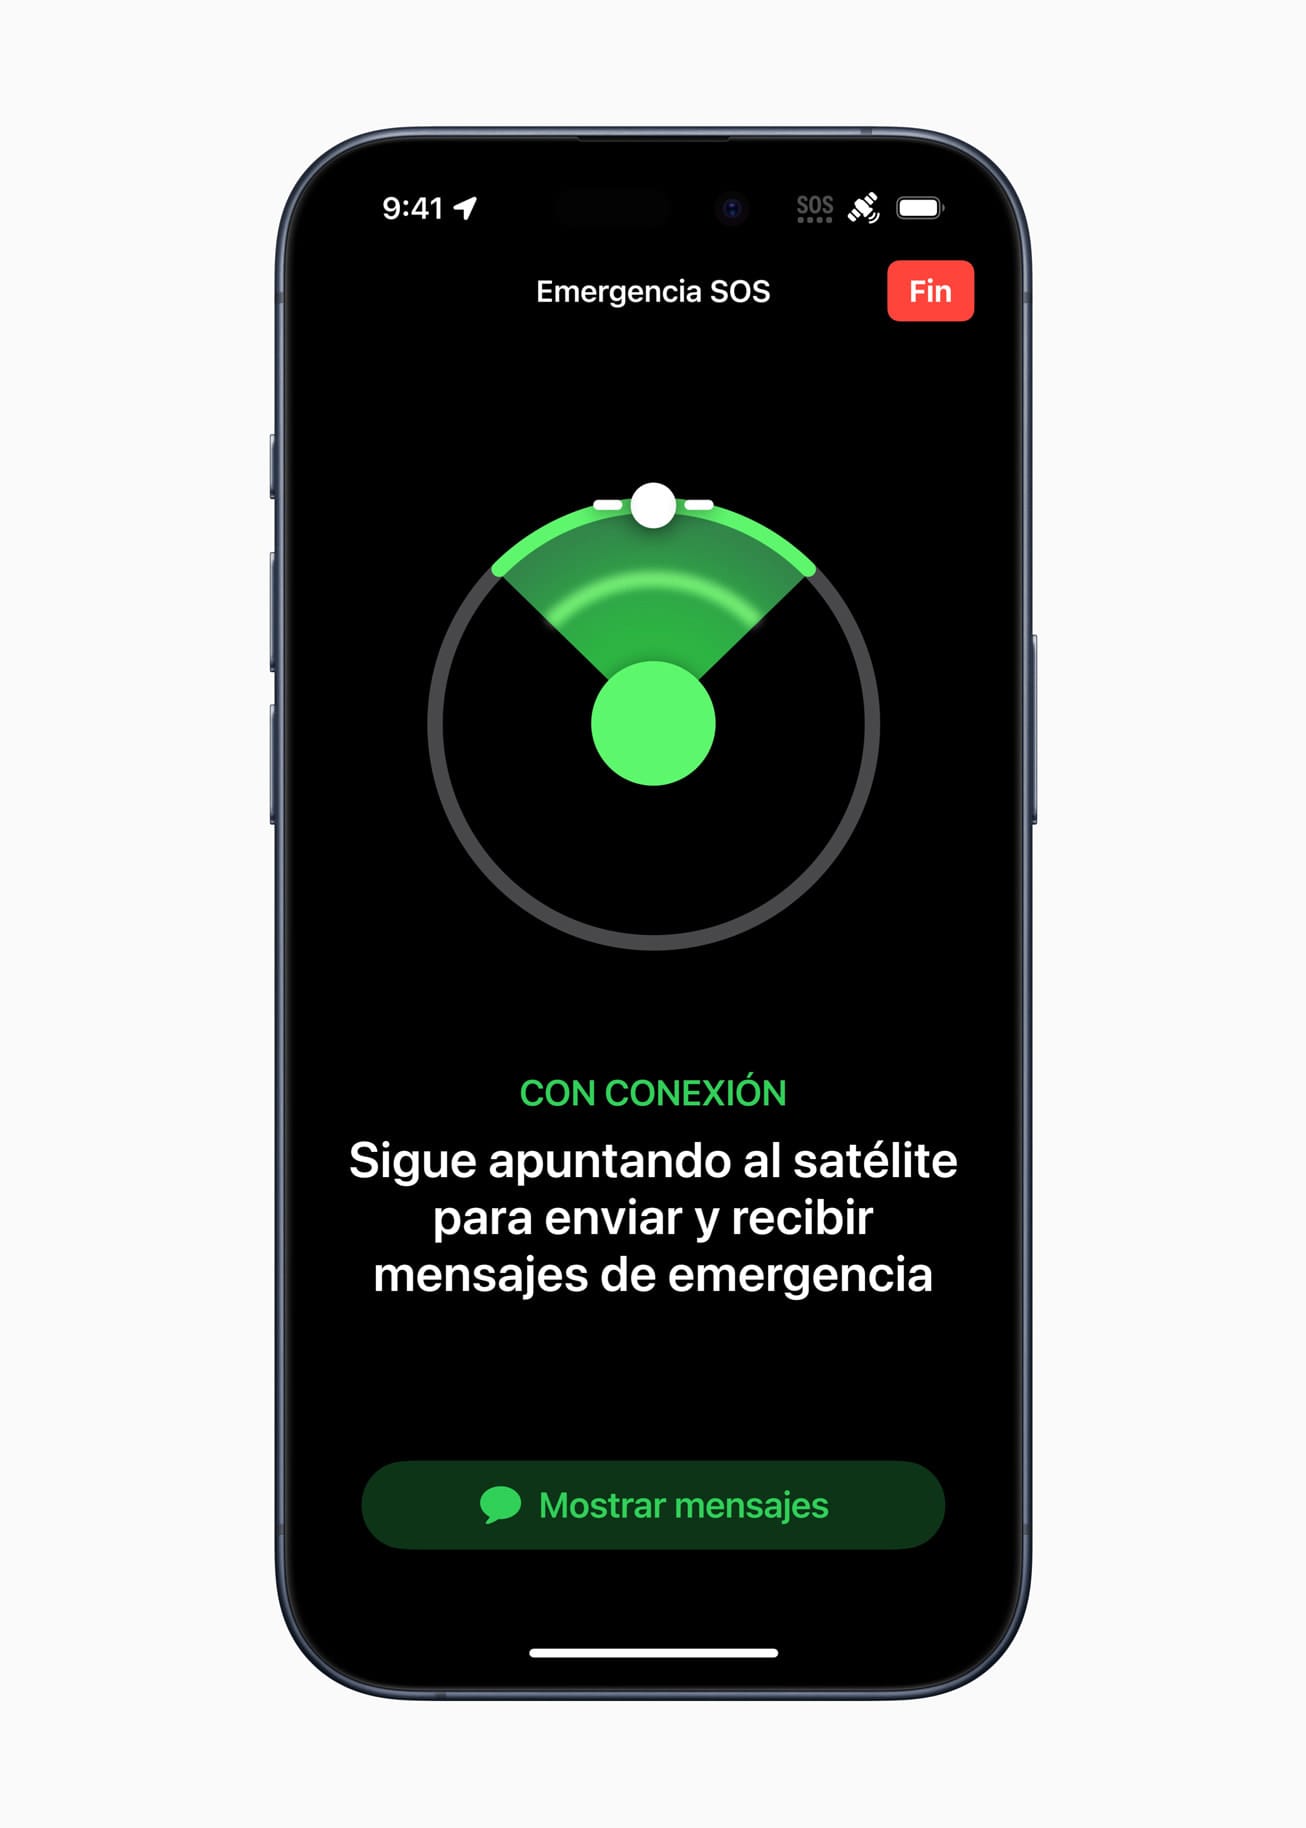 Emergencia SOS vía satélite llega a España y Suiza para los usuarios del iPhone 15 y iPhone 14